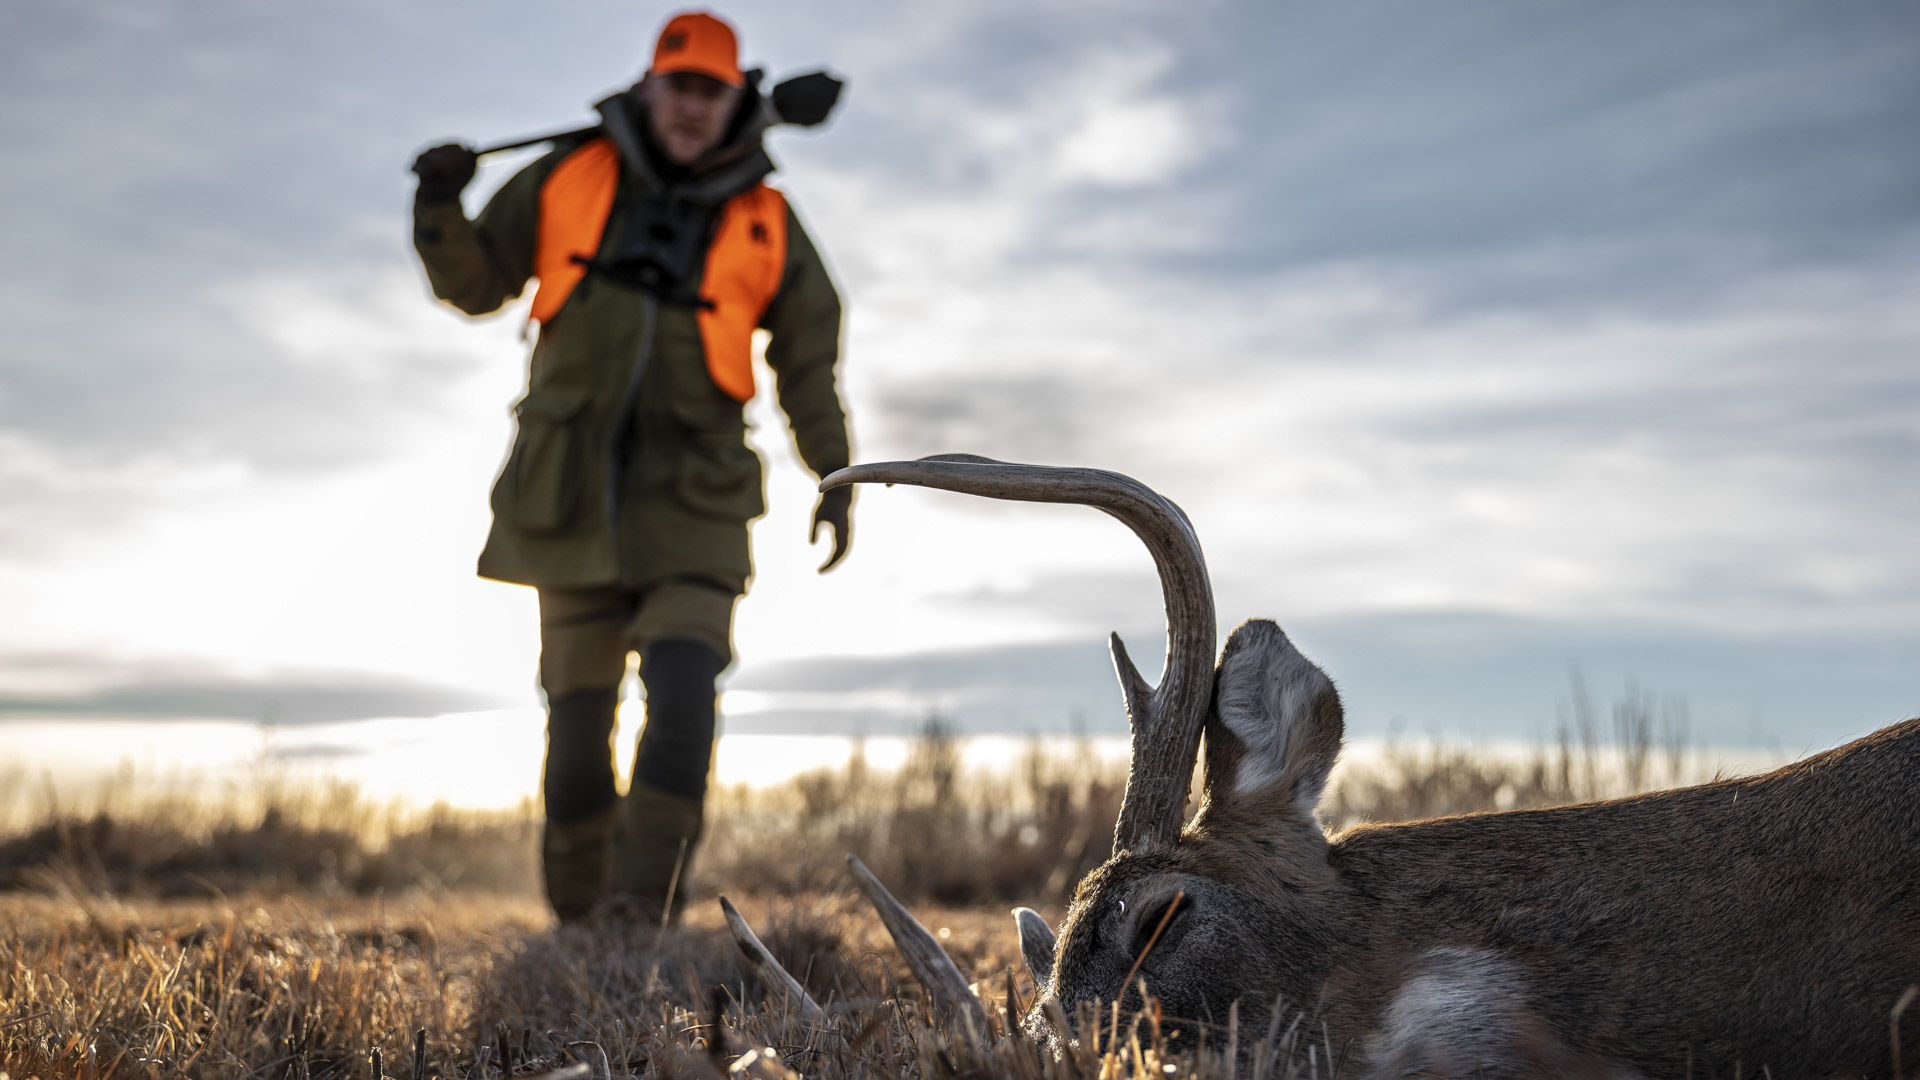 Simon Barr a caccia di cervi dalla coda bianca in Nebraska, nel corso di un'avventura di caccia che ha permesso di sperimentare sia il nuovo calibro .300 Prc sia il munizionamento Hornady Outfitter con la nuova palla CX